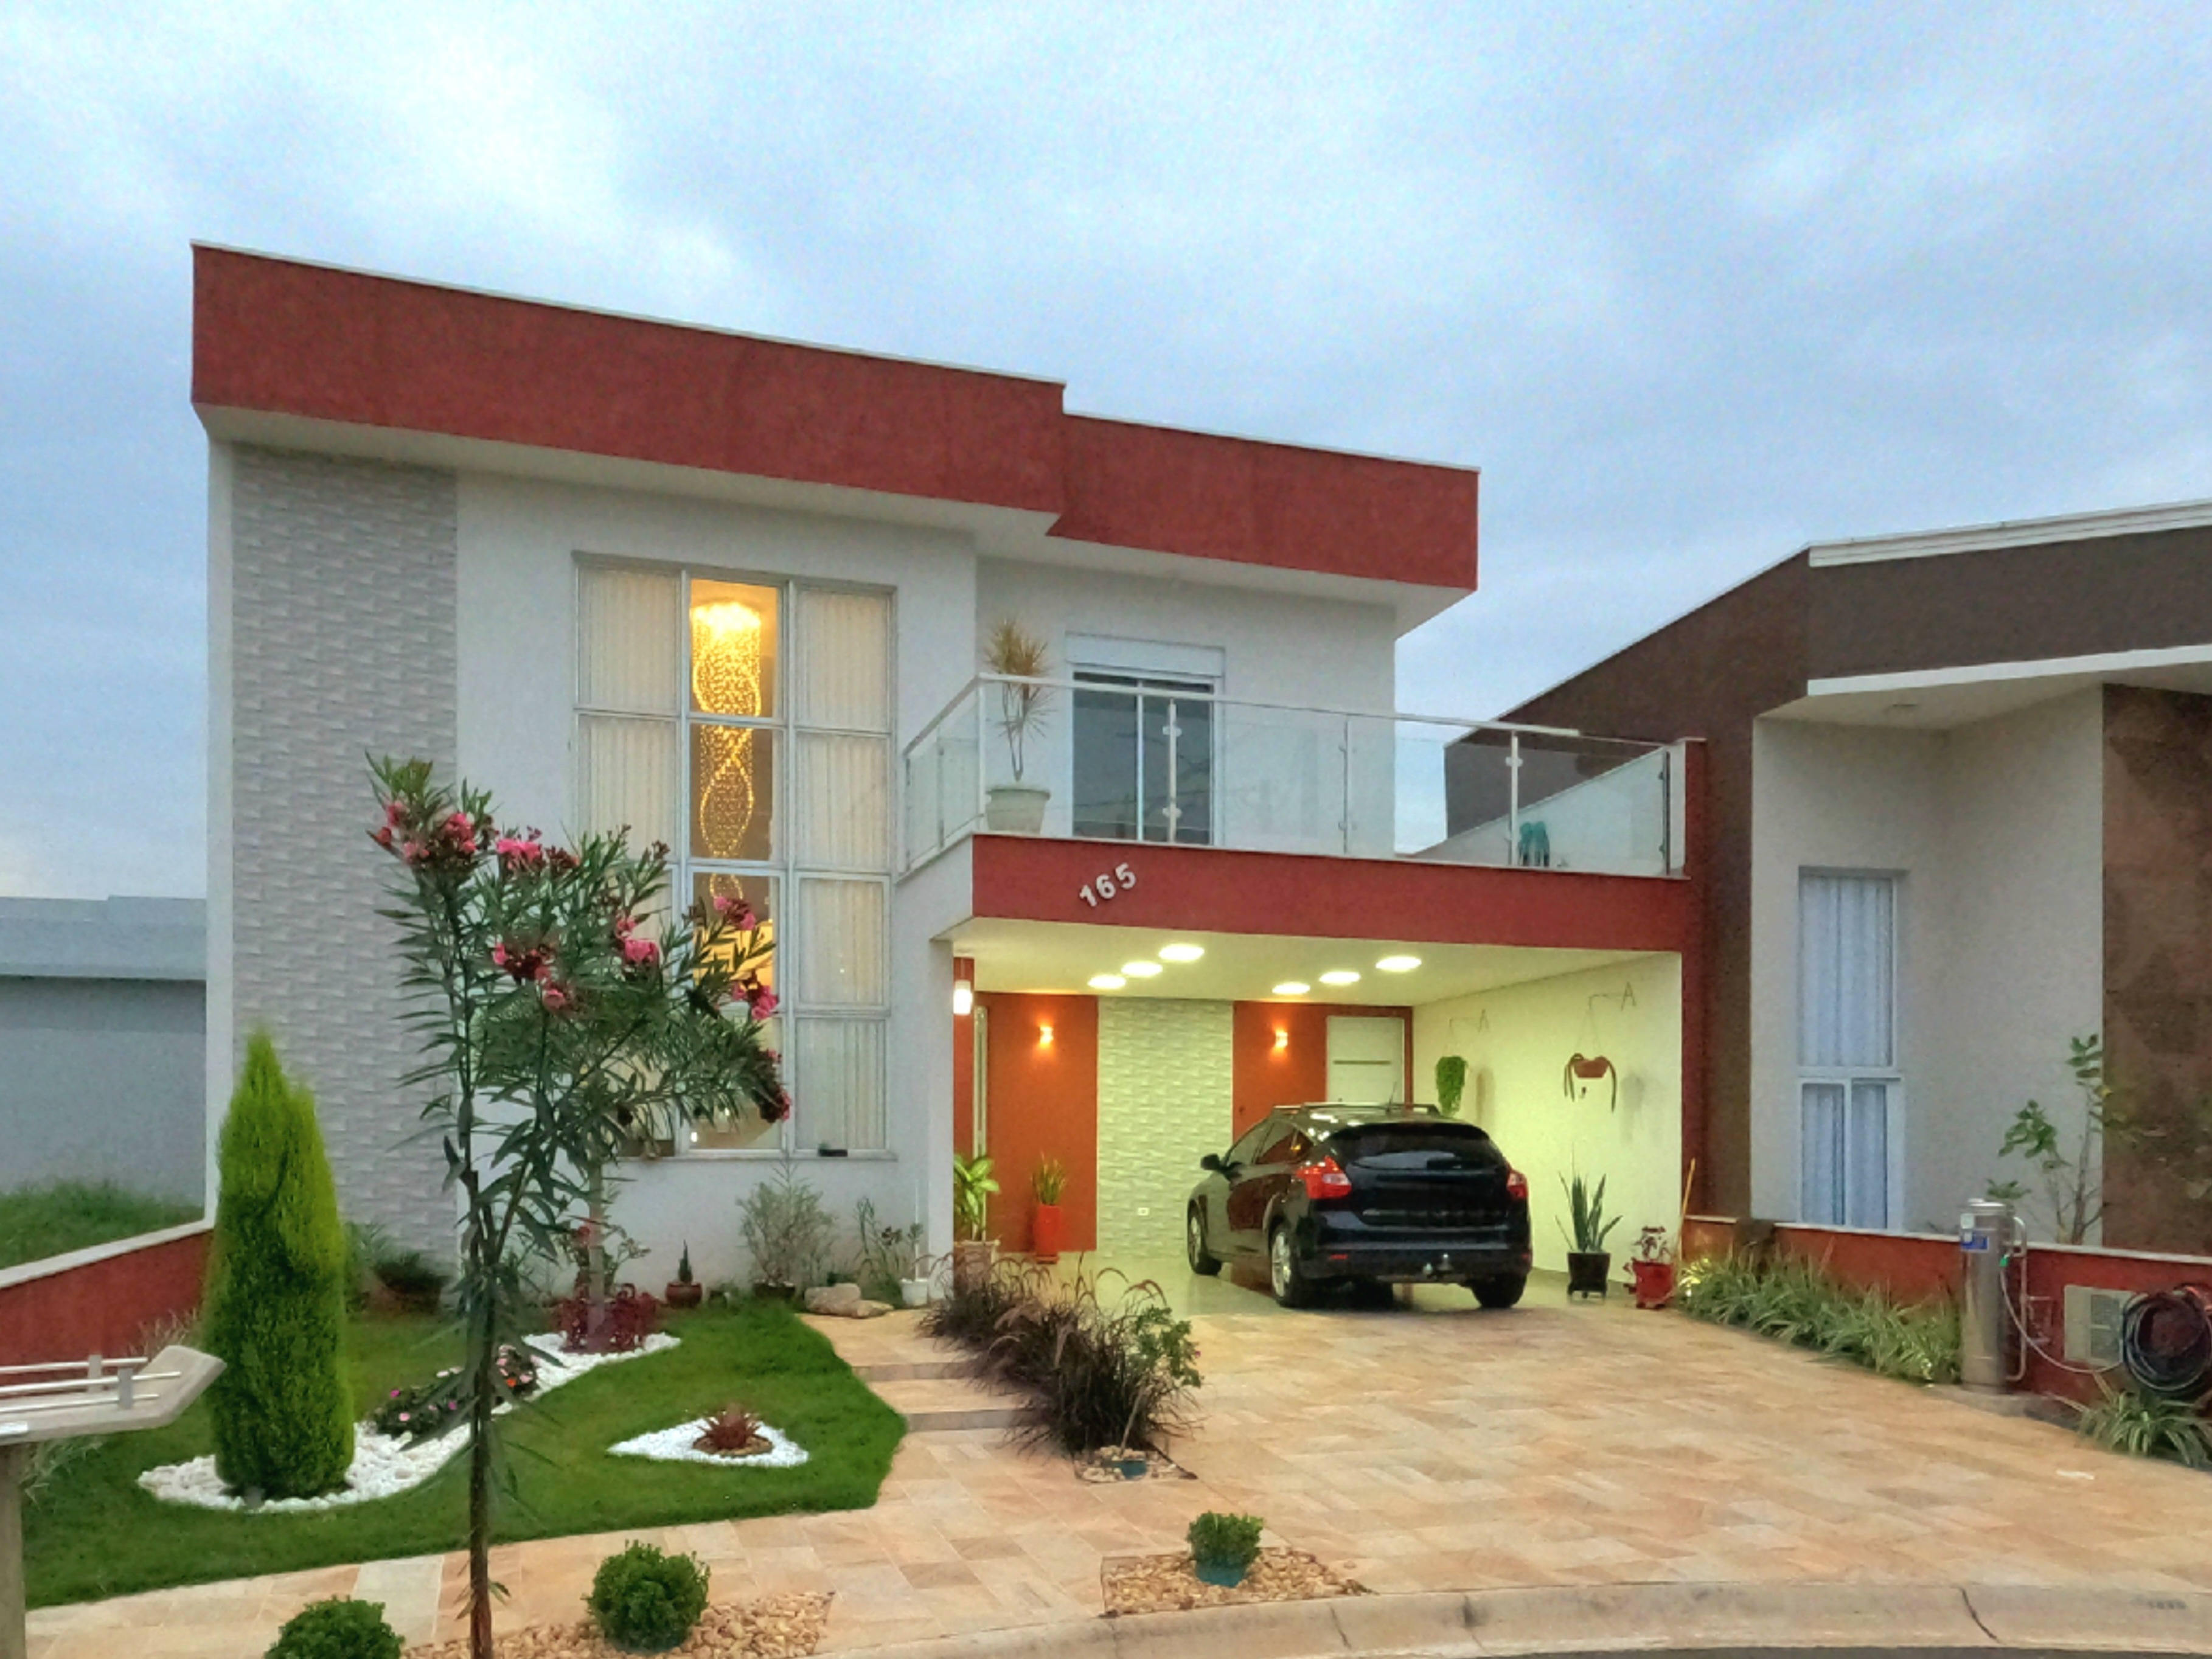 Apartamento novo de alto padrão à venda, 3 quartos com suíte máster, 3  vagas cobertas, 250 m² privativo, São Pedro, São José dos Pinhais, PR -  Imobiliária GreenVille